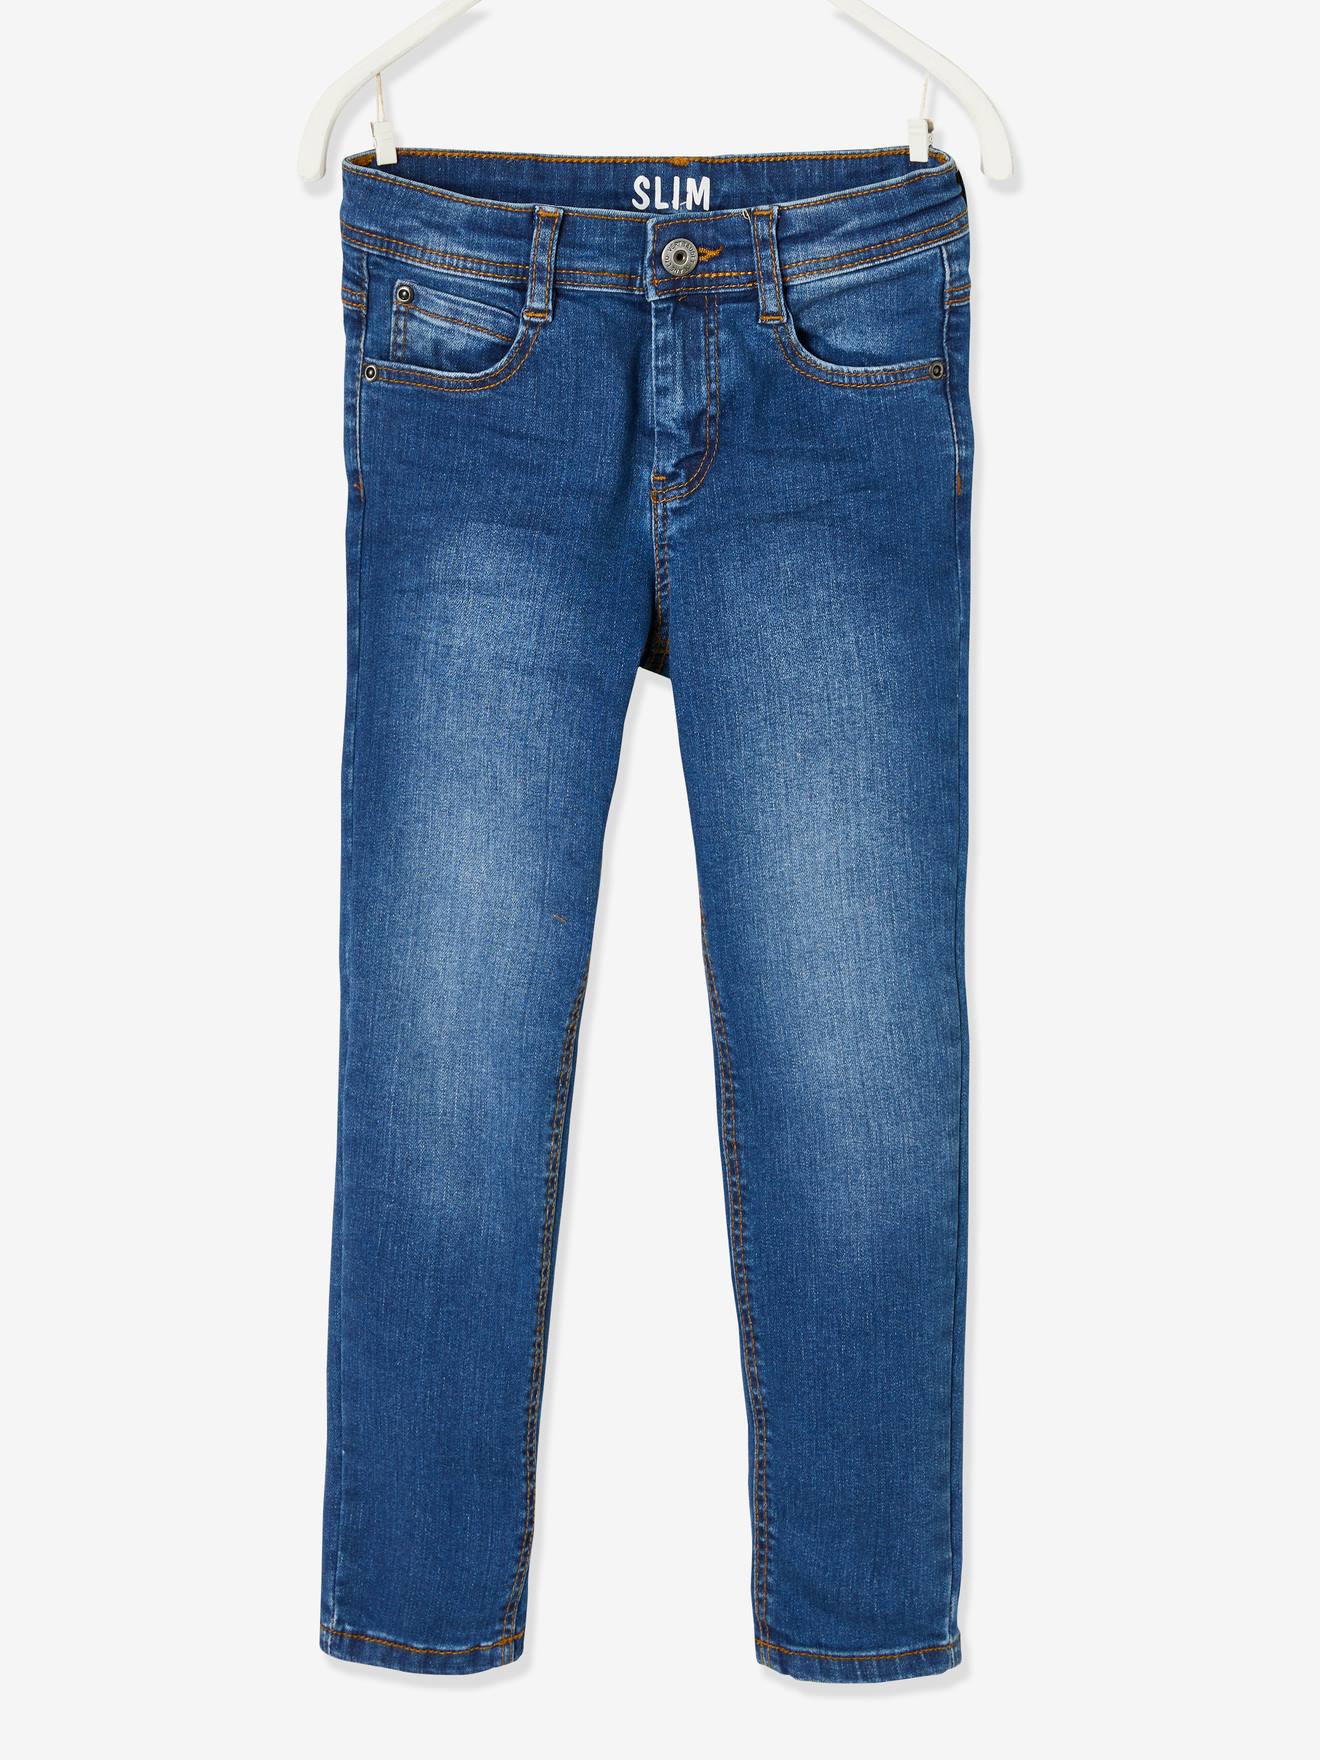 Jungen Jeans modern Kinder Hose Taillengummi weiches Jeans bequem 122 bis 176 